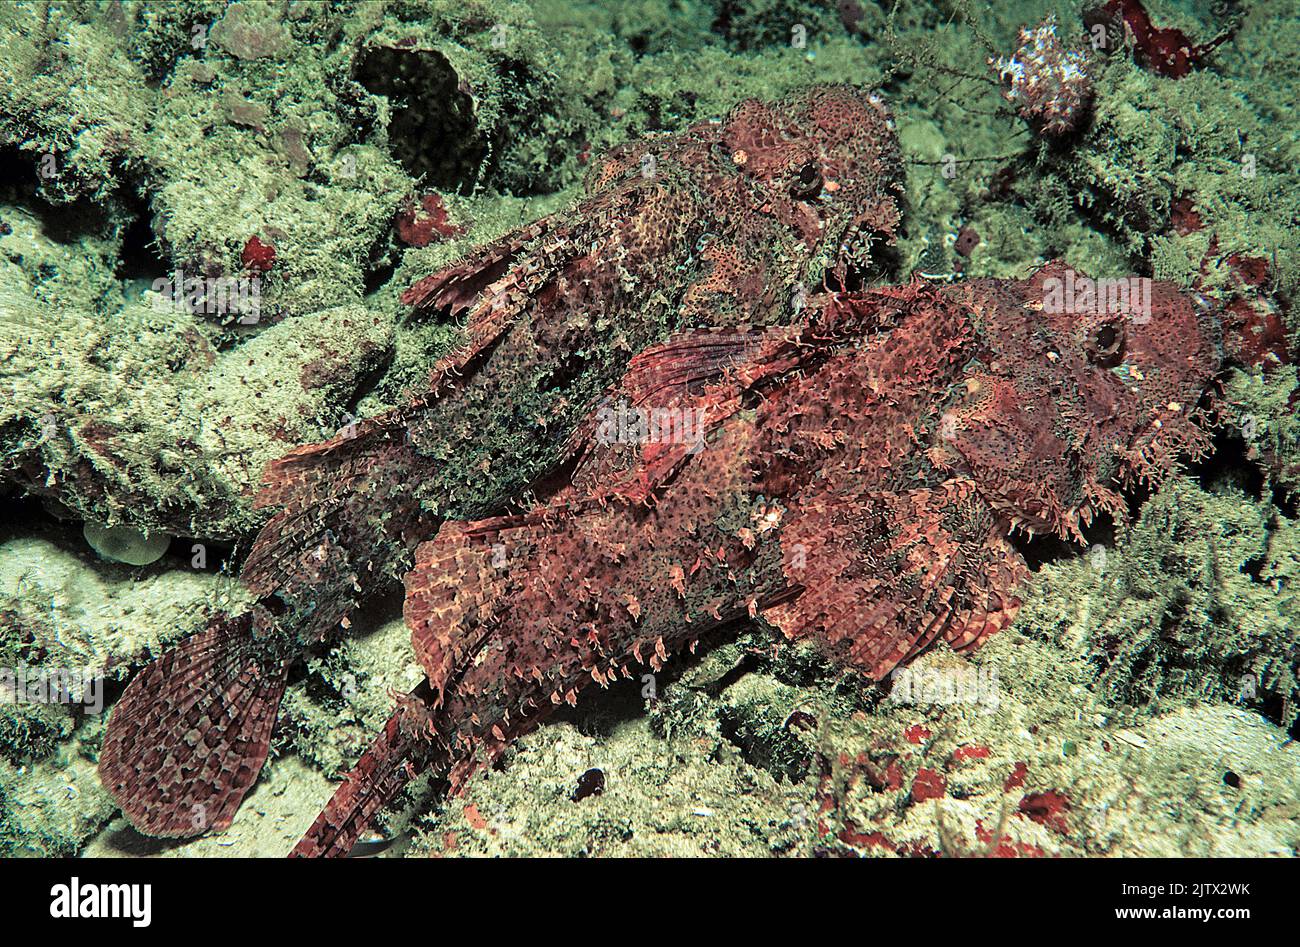 Scorpionsfish de raggy ou Smallscall Scorpionfish (Scorpaenopsis venosa), paire dans un récif de corail, Maldives, océan Indien, Asie Banque D'Images